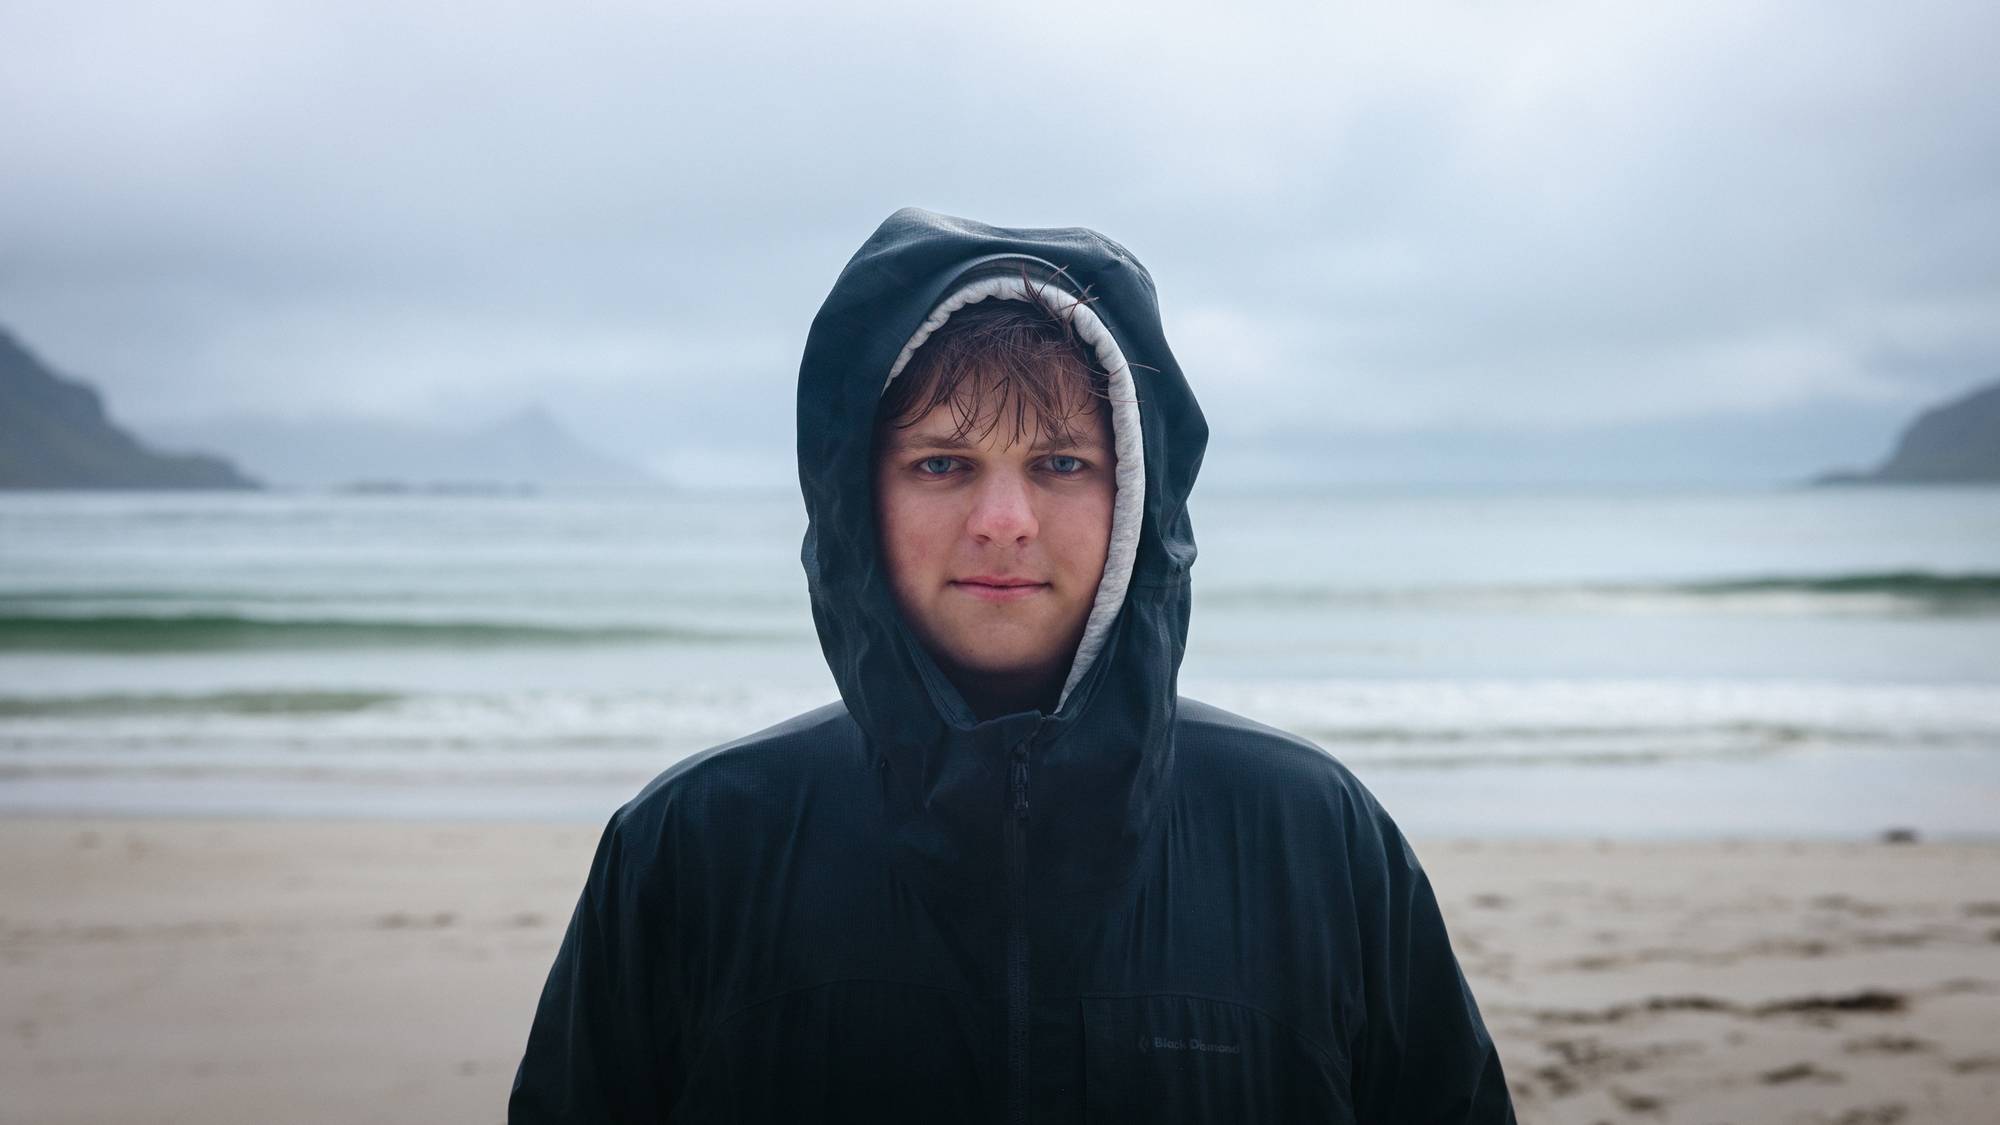 Et portrett av Kristoffer. Han står på en vakker strand i Lofoten med hettegenser og regnjakke, begge hettene på. Han ser rett i kamera, våt i håret. Det ser friskt og kaldt ut.